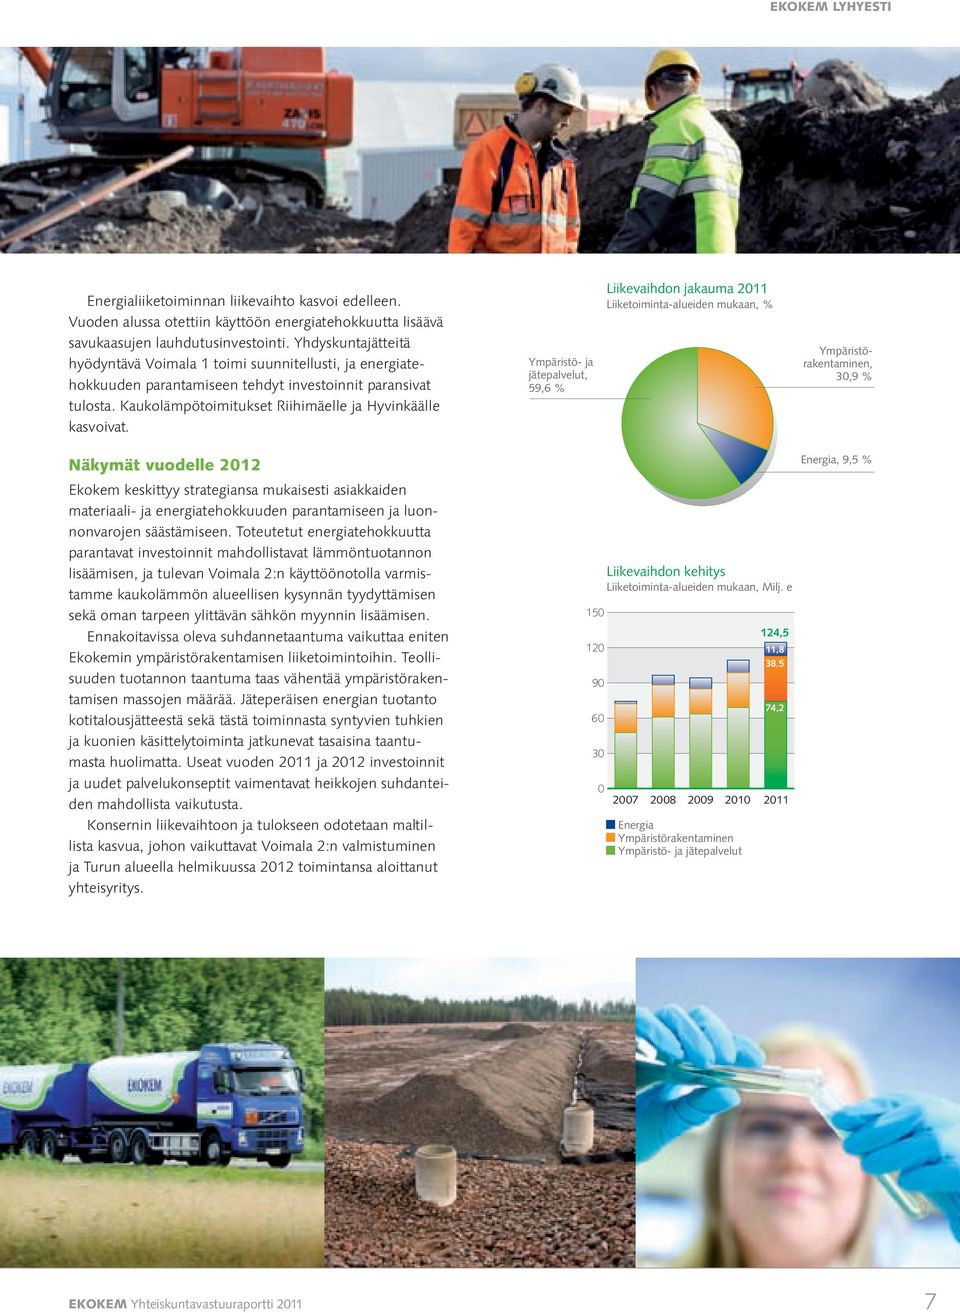 Ympäristö- ja jätepalvelut, 59,6 % Liikevaihdon jakauma 2011 Liiketoiminta-alueiden mukaan, % Ympäristörakentaminen, 30,9 % Näkymät vuodelle 2012 Ekokem keskittyy strategiansa mukaisesti asiakkaiden